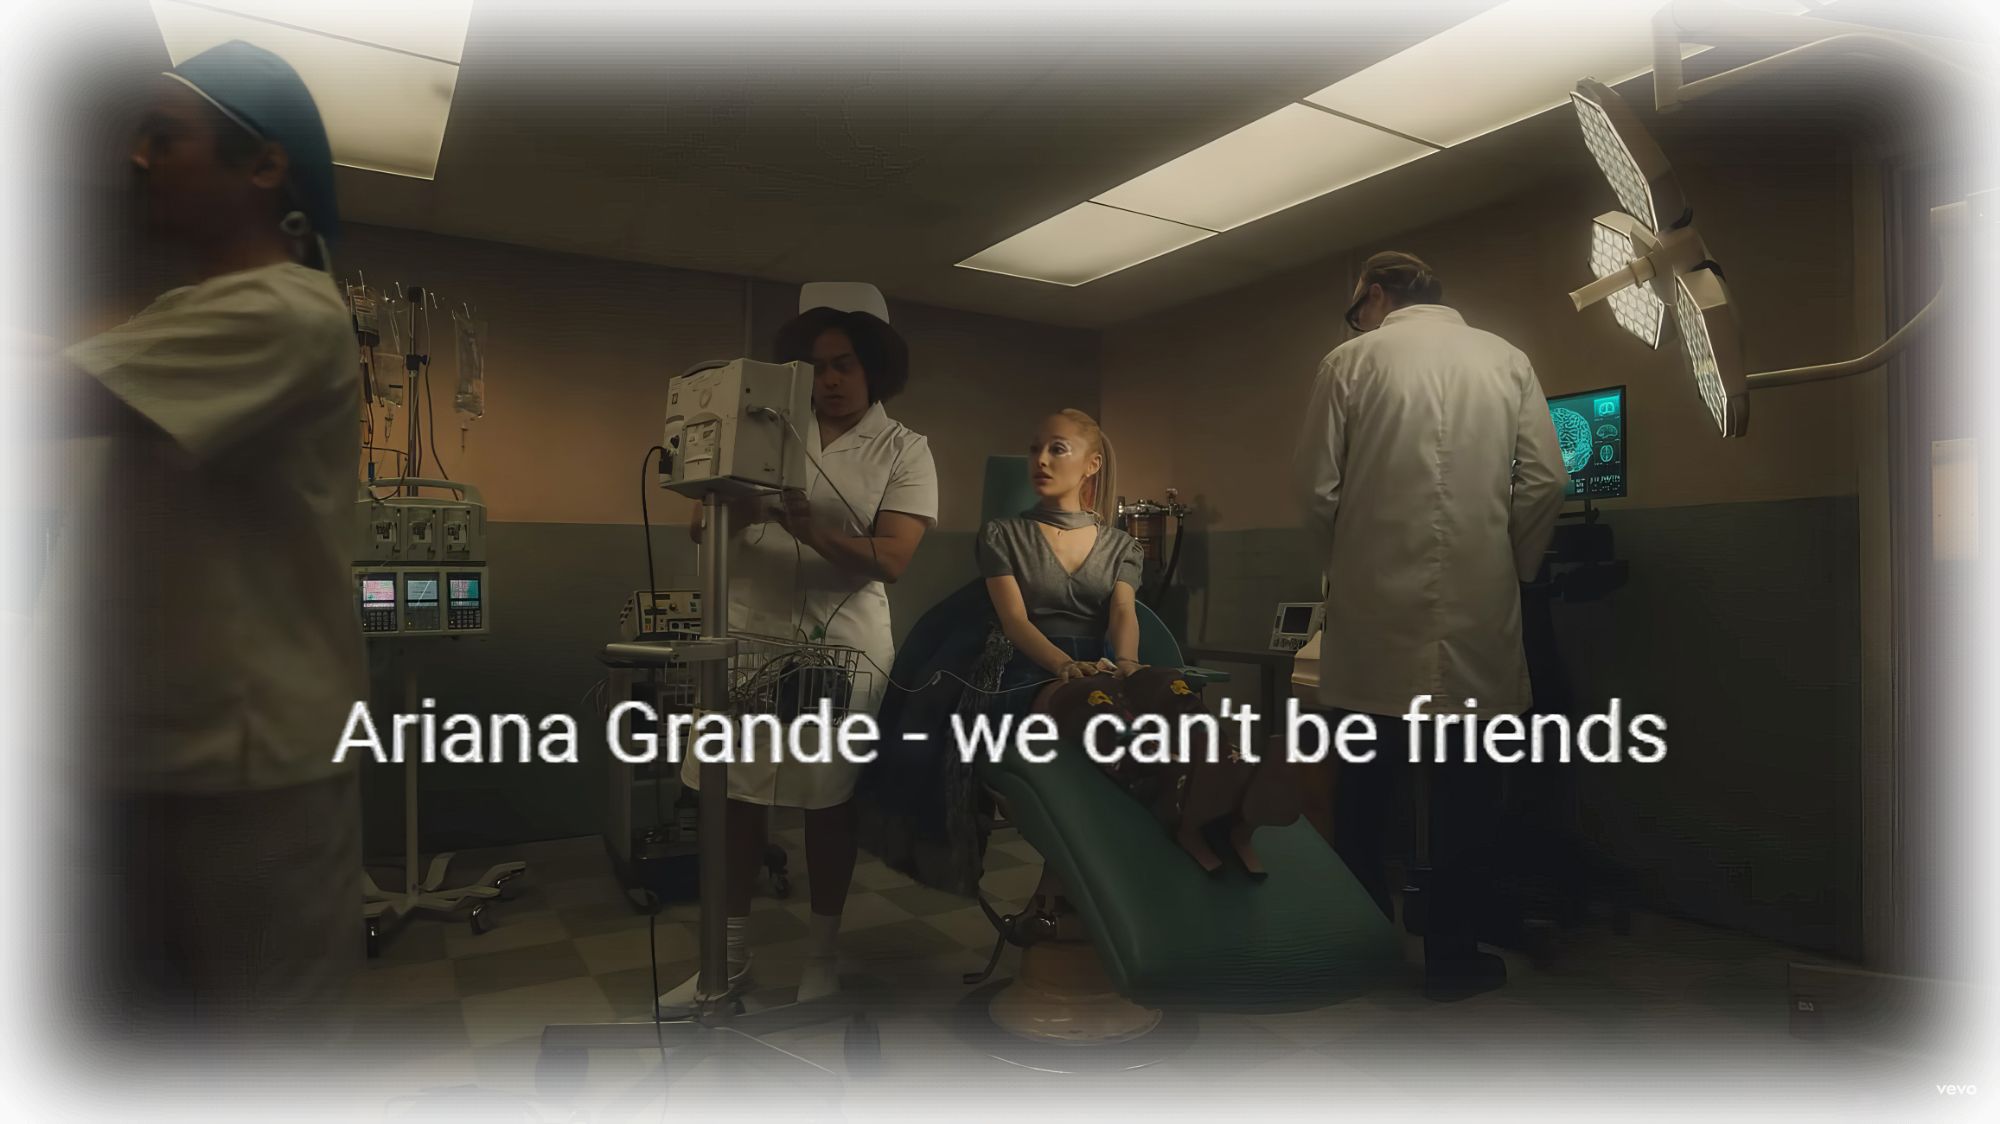 Ariana Grande - we can't be friends, перевод текста песни на русский язык